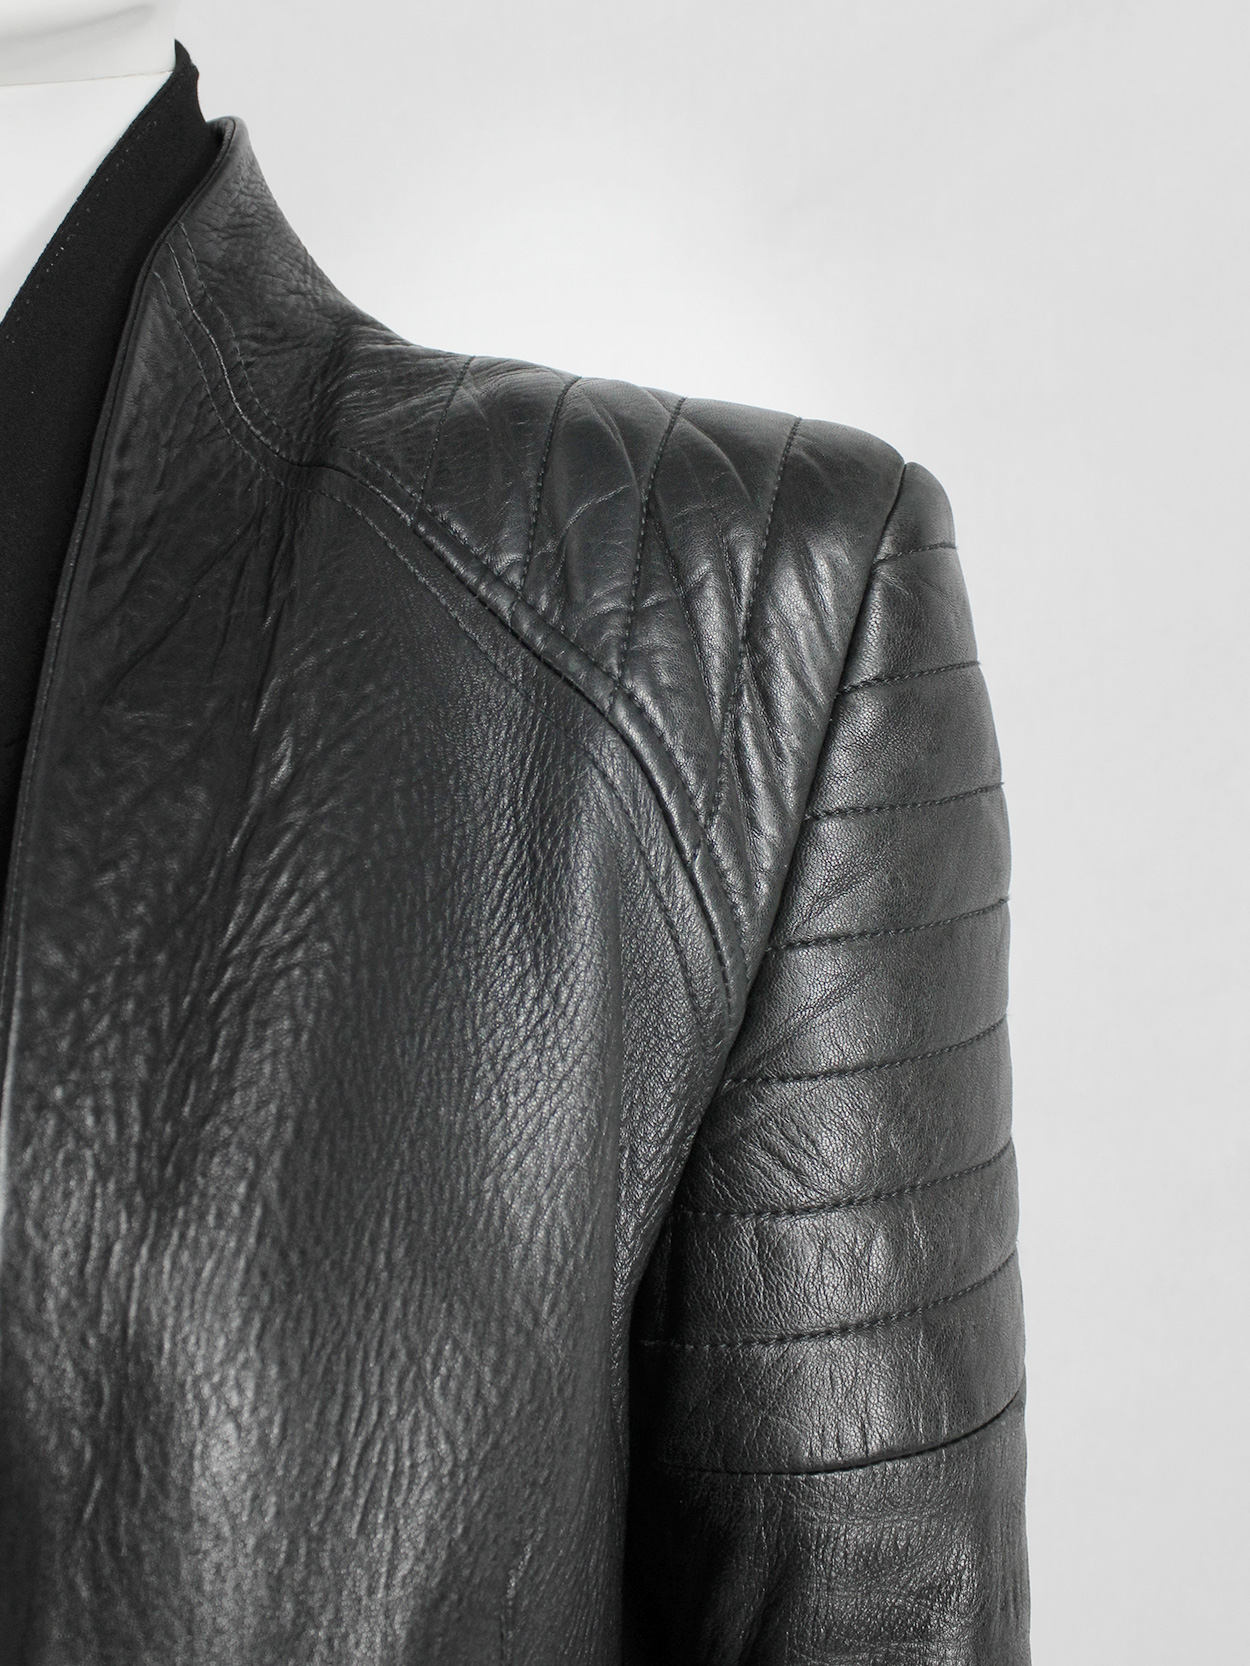 vaniitas Haider Ackermann black leather biker blazer with padded shoulder details fall 2012 (5)